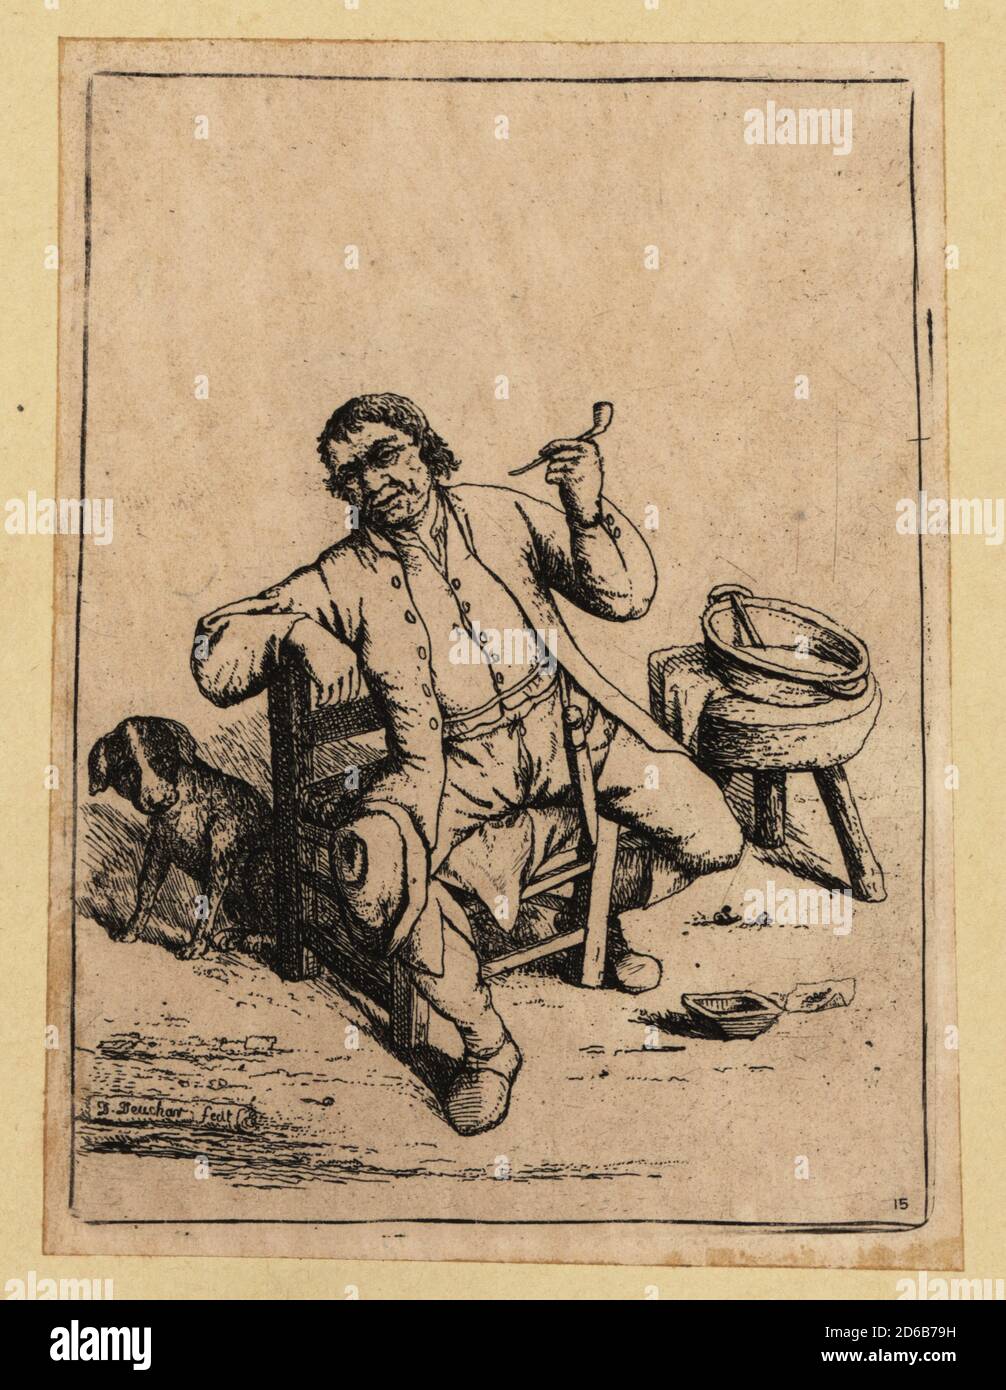 Mann aus dem 17. Jahrhundert saß auf einem Holzstuhl, rauchte eine Tabakpfeife, Dolch am Gürtel, sein Hut am Knie. Ein Hund an seiner Seite. Kupferstich von David Deuchar aus EINER Sammlung von Radierungen nach den bedeutendsten Meistern der niederländischen und flämischen Schulen, Edinburgh, 1803. Stockfoto